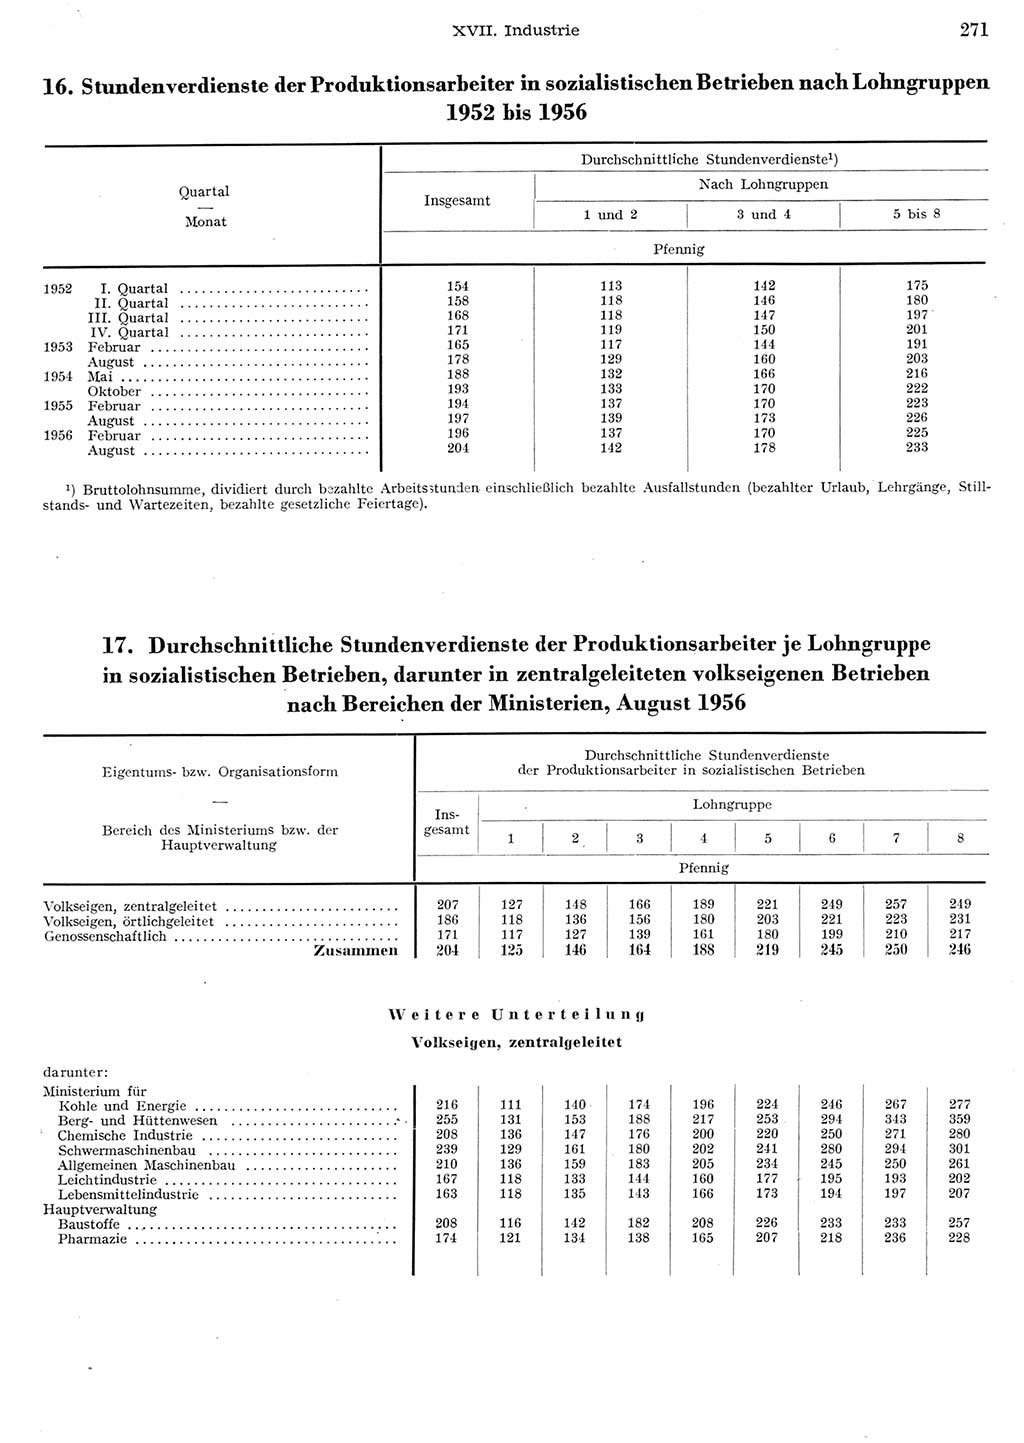 Statistisches Jahrbuch der Deutschen Demokratischen Republik (DDR) 1956, Seite 271 (Stat. Jb. DDR 1956, S. 271)